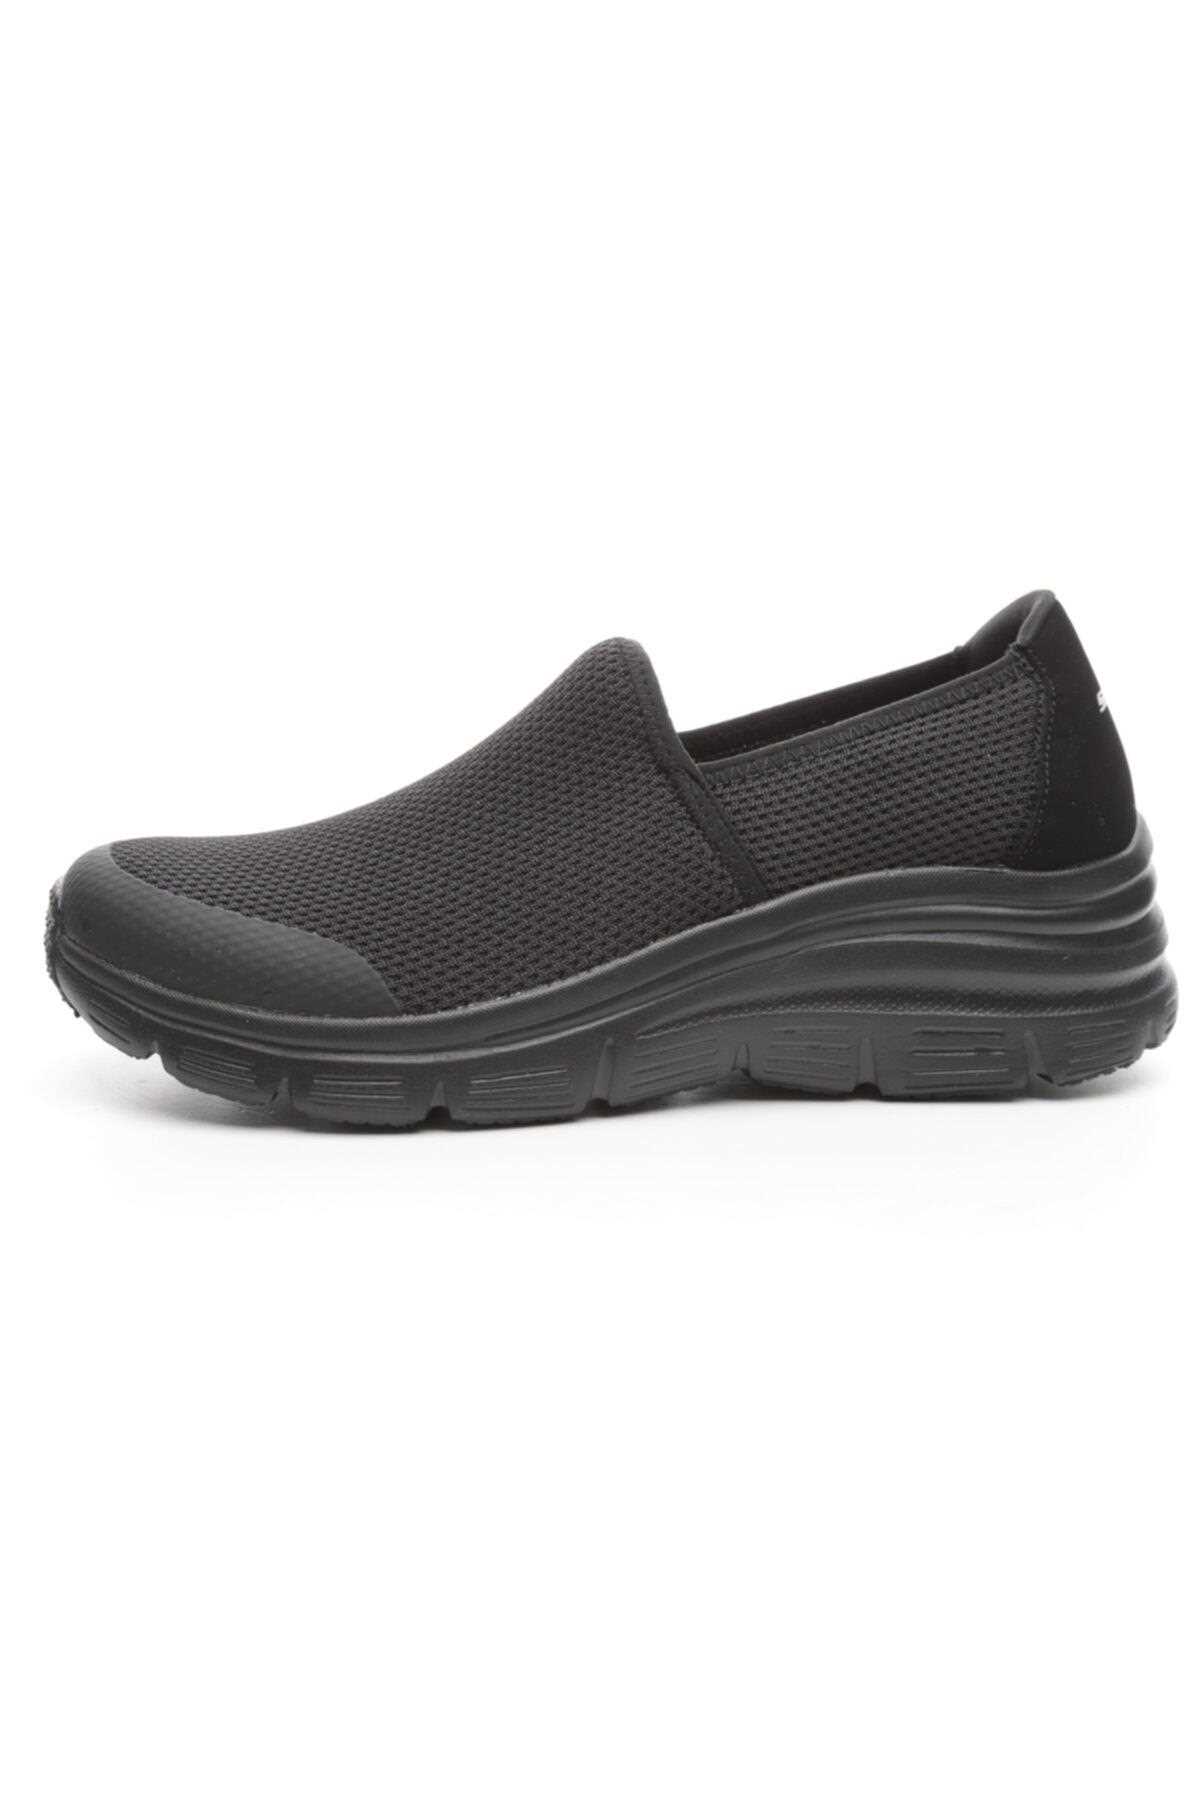 خرید کفش مخصوص پیاده روی زنانه از ترکیه SKECHERS کد ty31841209